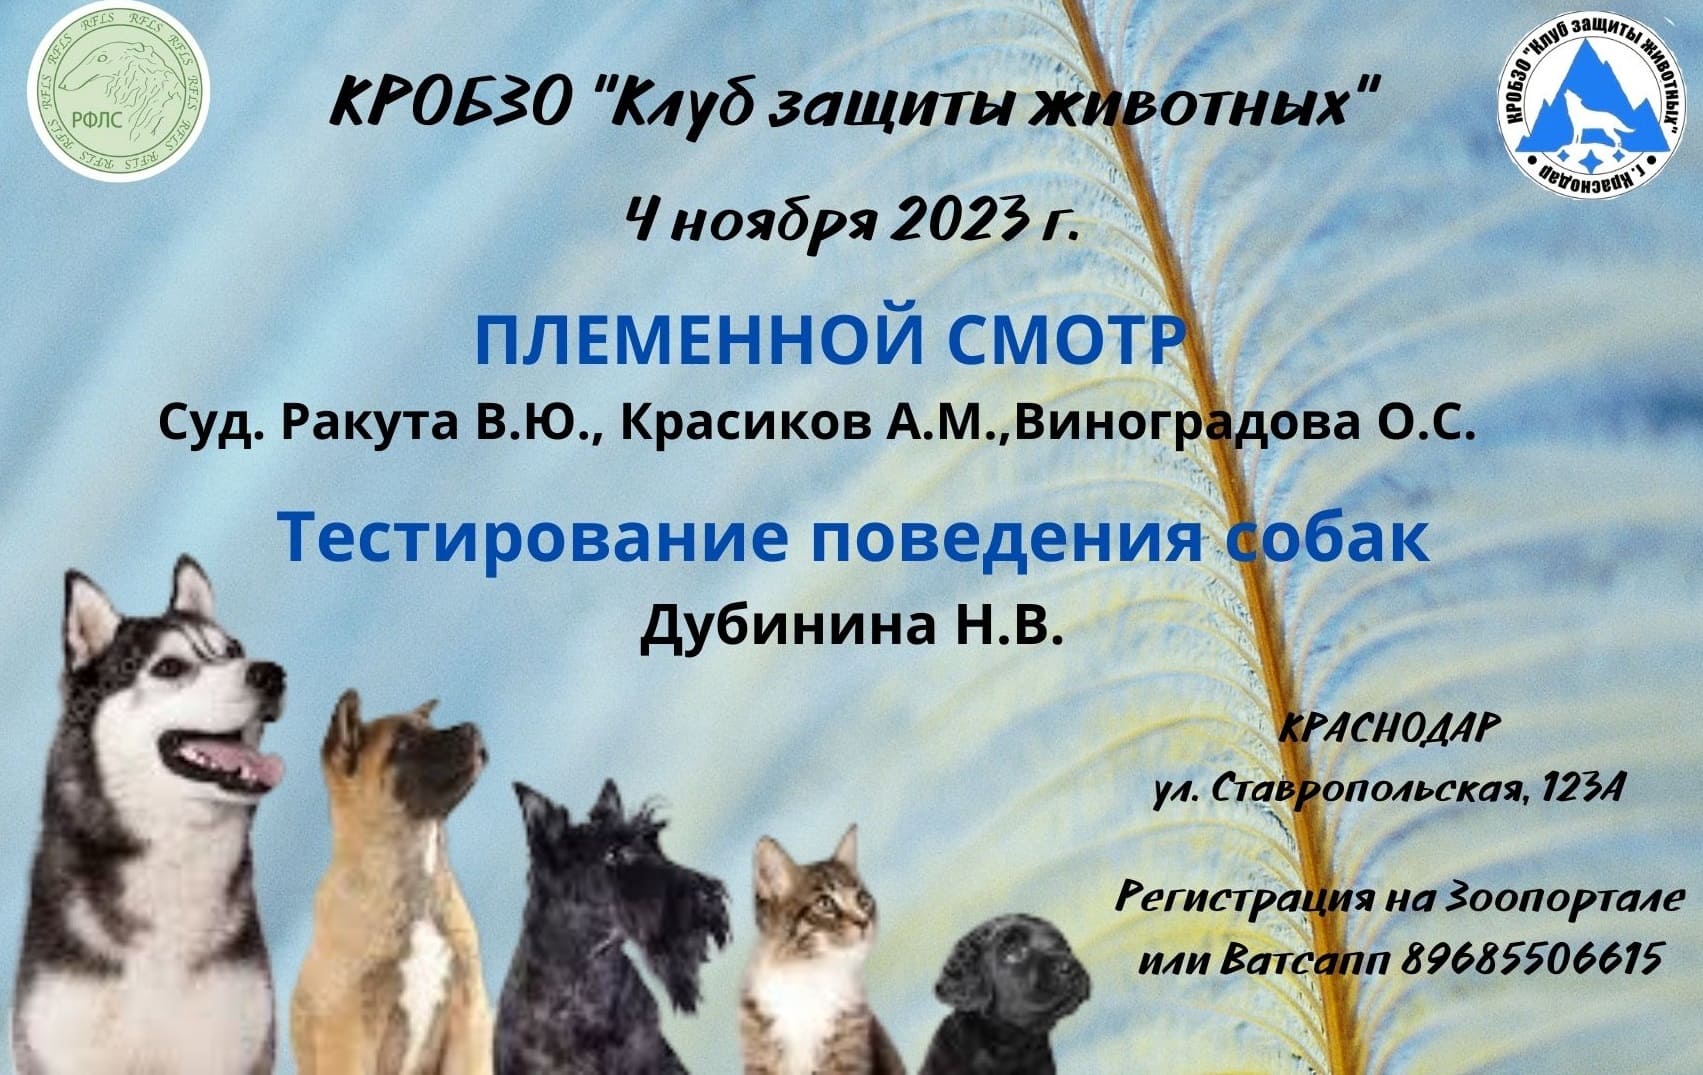 Племенной смотр и тестирование поведения собак 4.10.2023 в Краснодаре